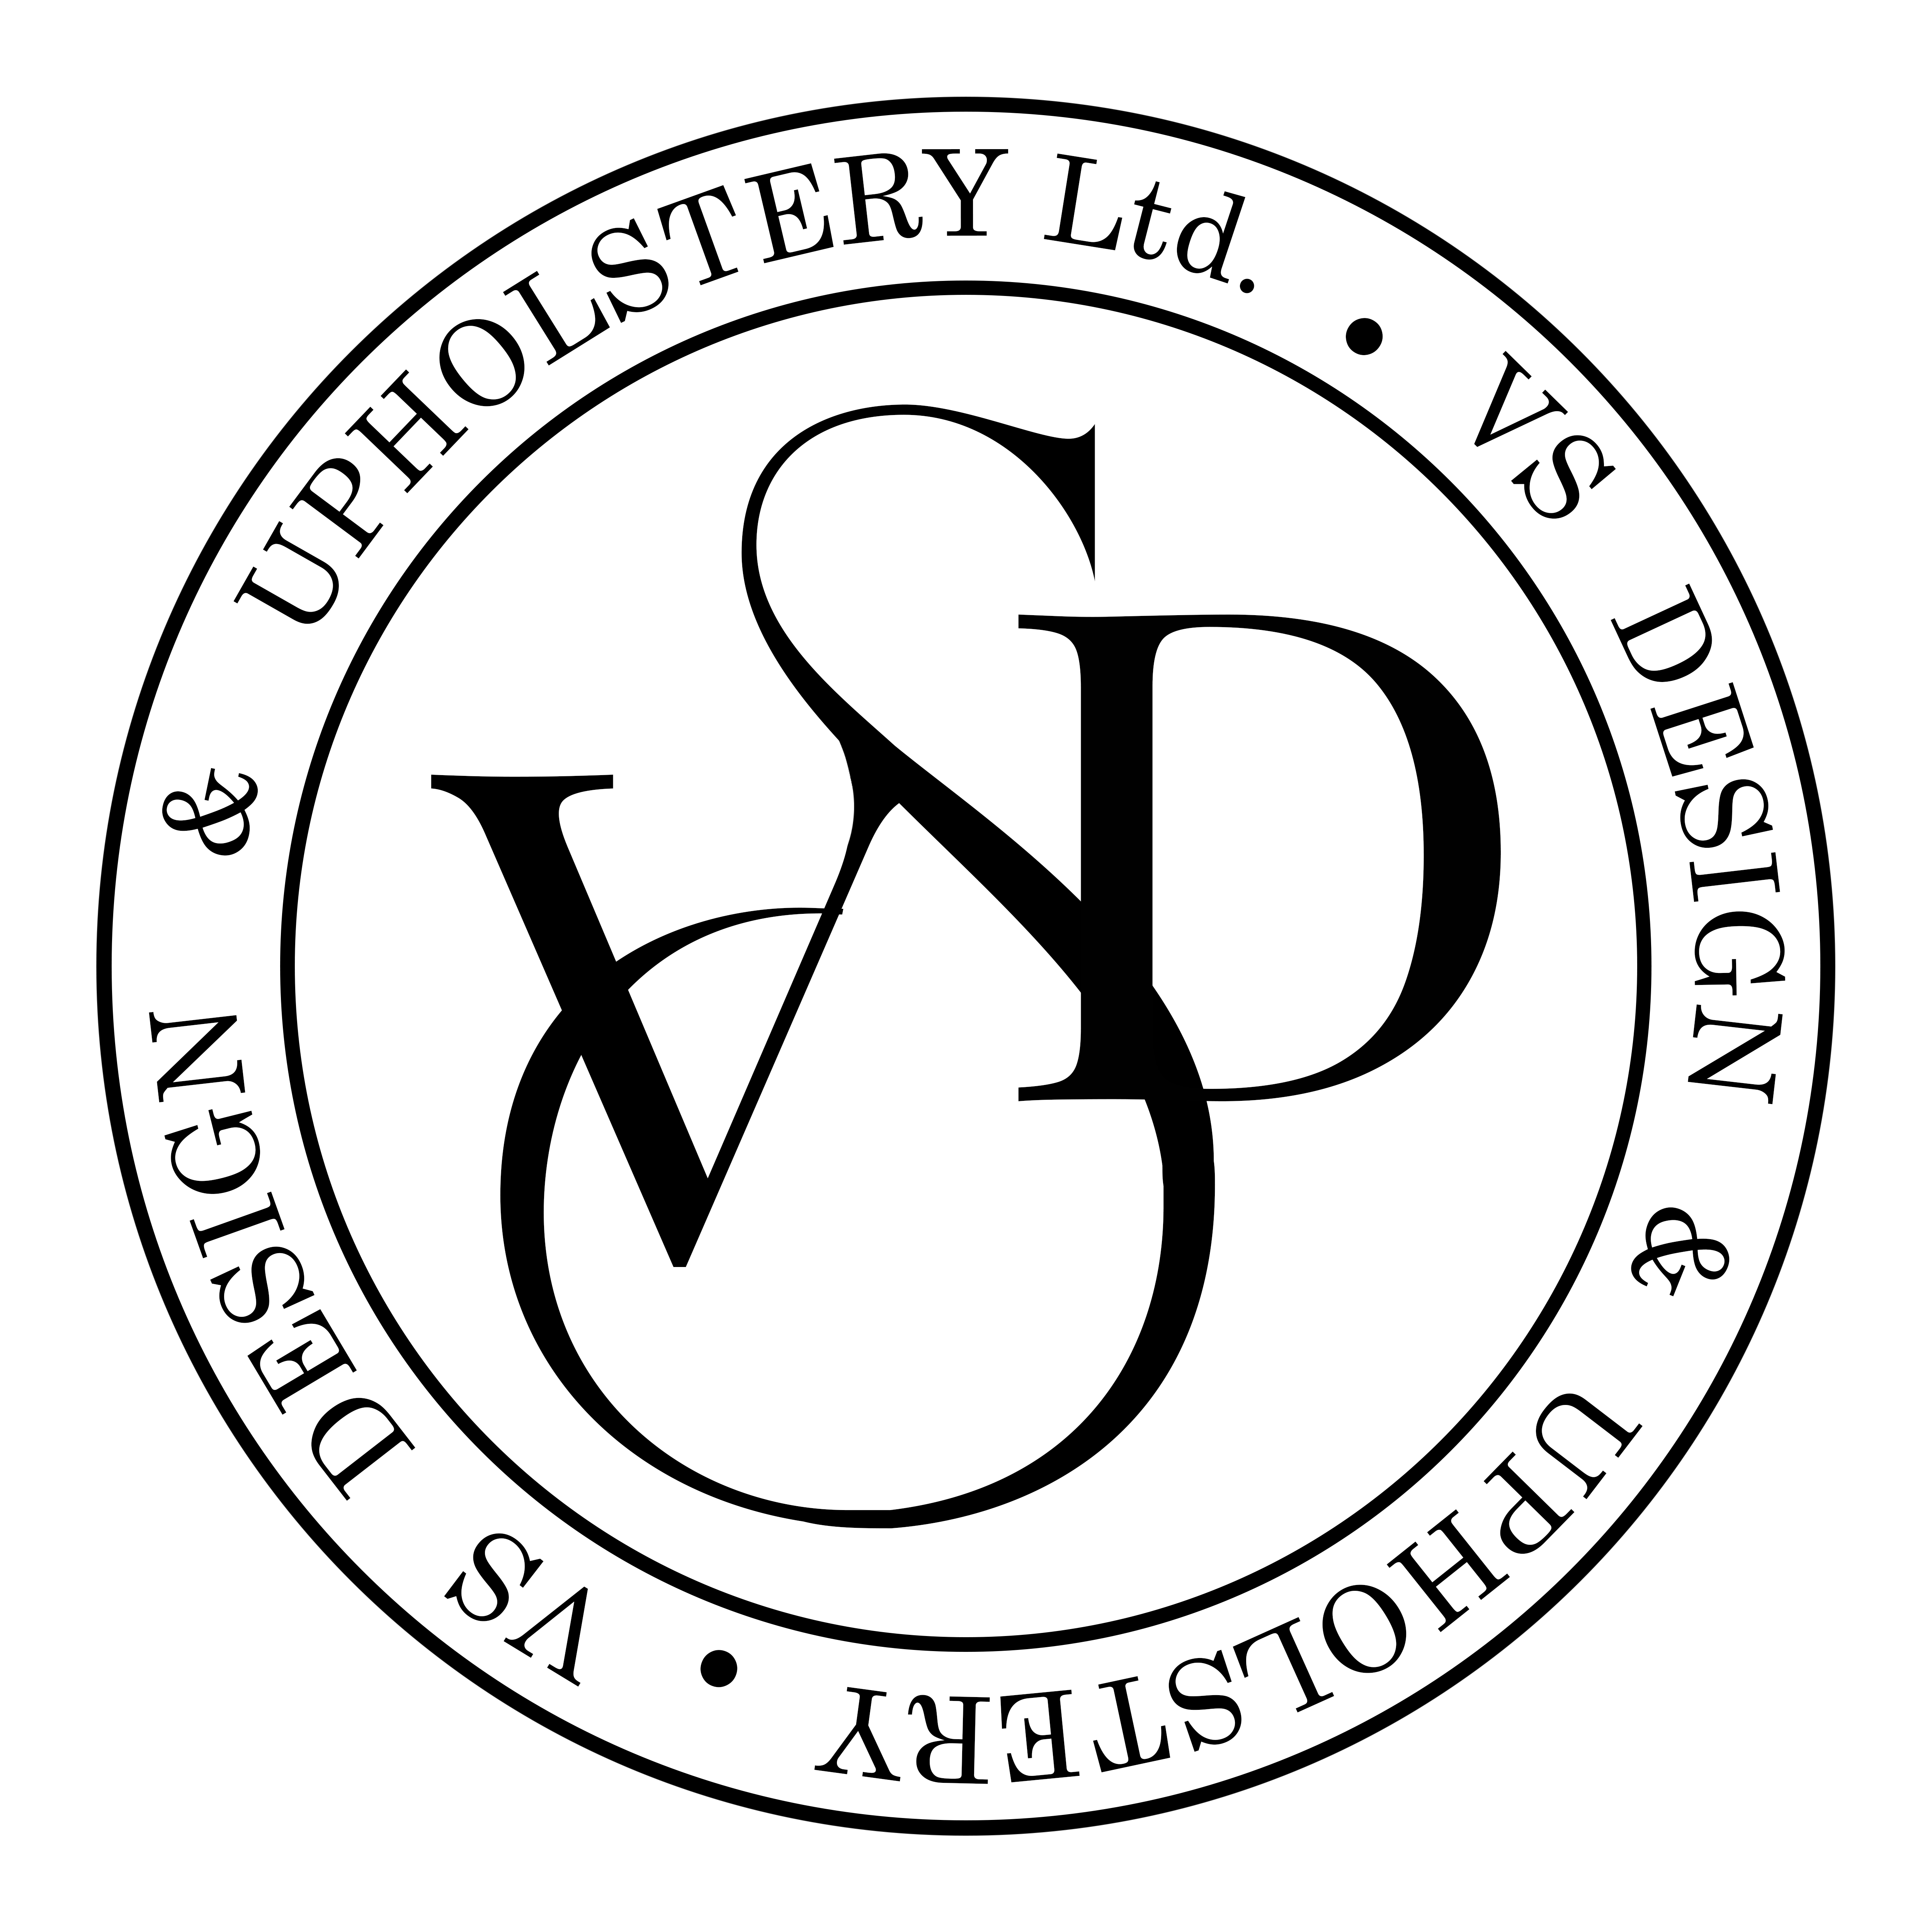 VS Design & Upholstery LTD's logo